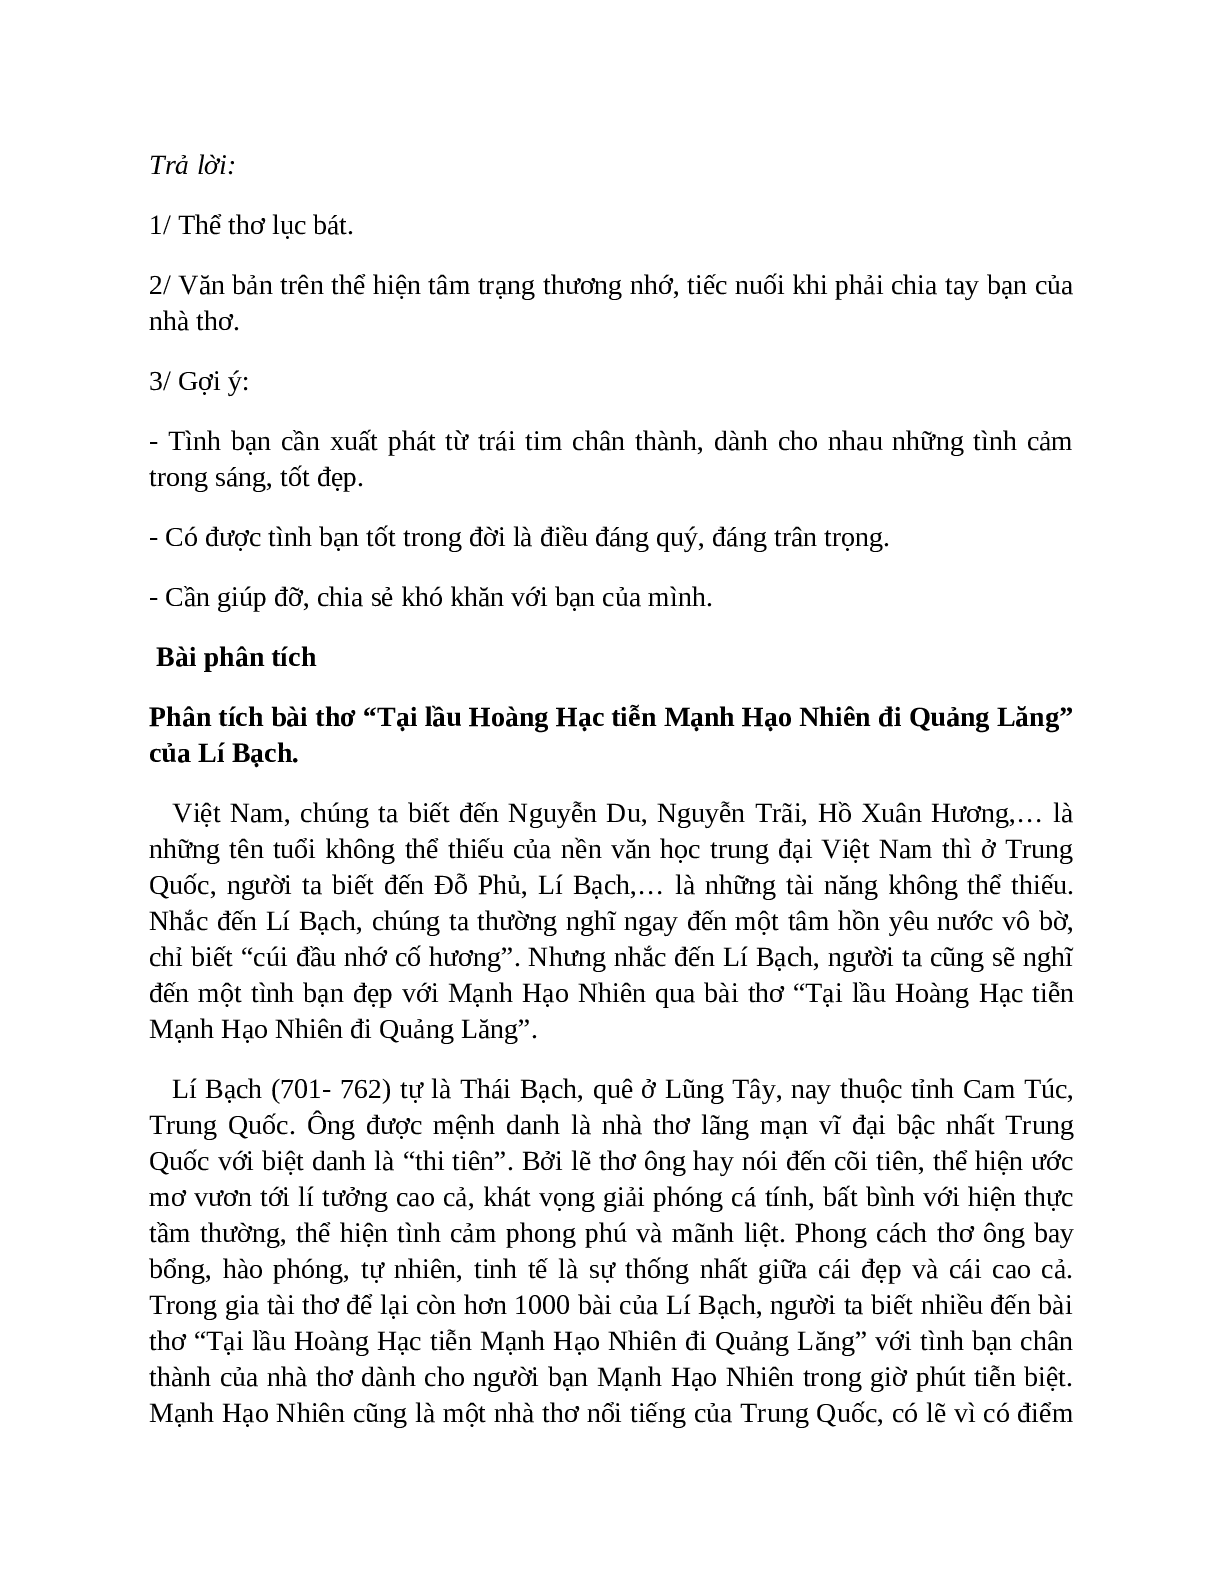 Sơ đồ tư duy bài Tại lầu Hoàng Hạc tiễn Mạnh Hạo Nhiên đi Quảng Lăng dễ nhớ, ngắn nhất - Ngữ văn lớp 10 (trang 6)